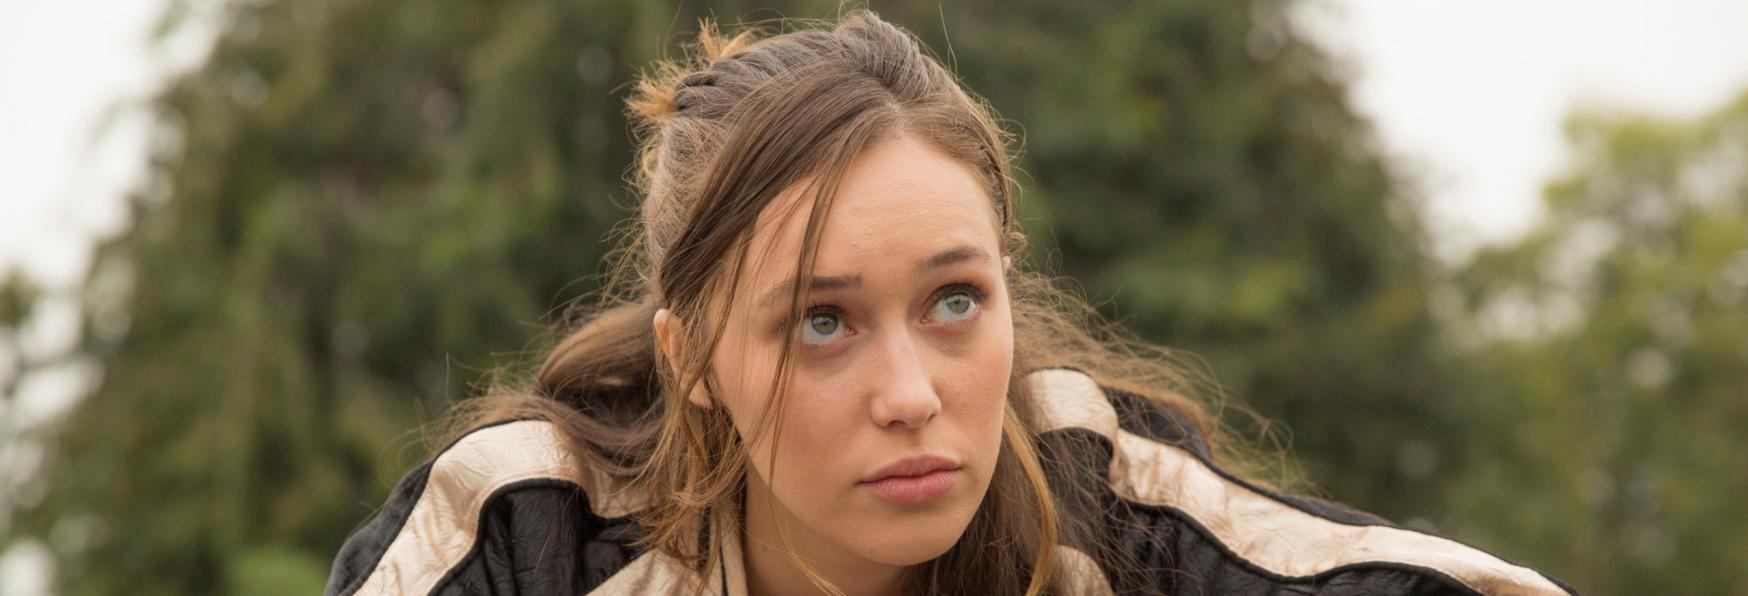 Alycia Debnam-Carey (Fear the Walking Dead) sarà Protagonista di una nuova Serie TV Hulu